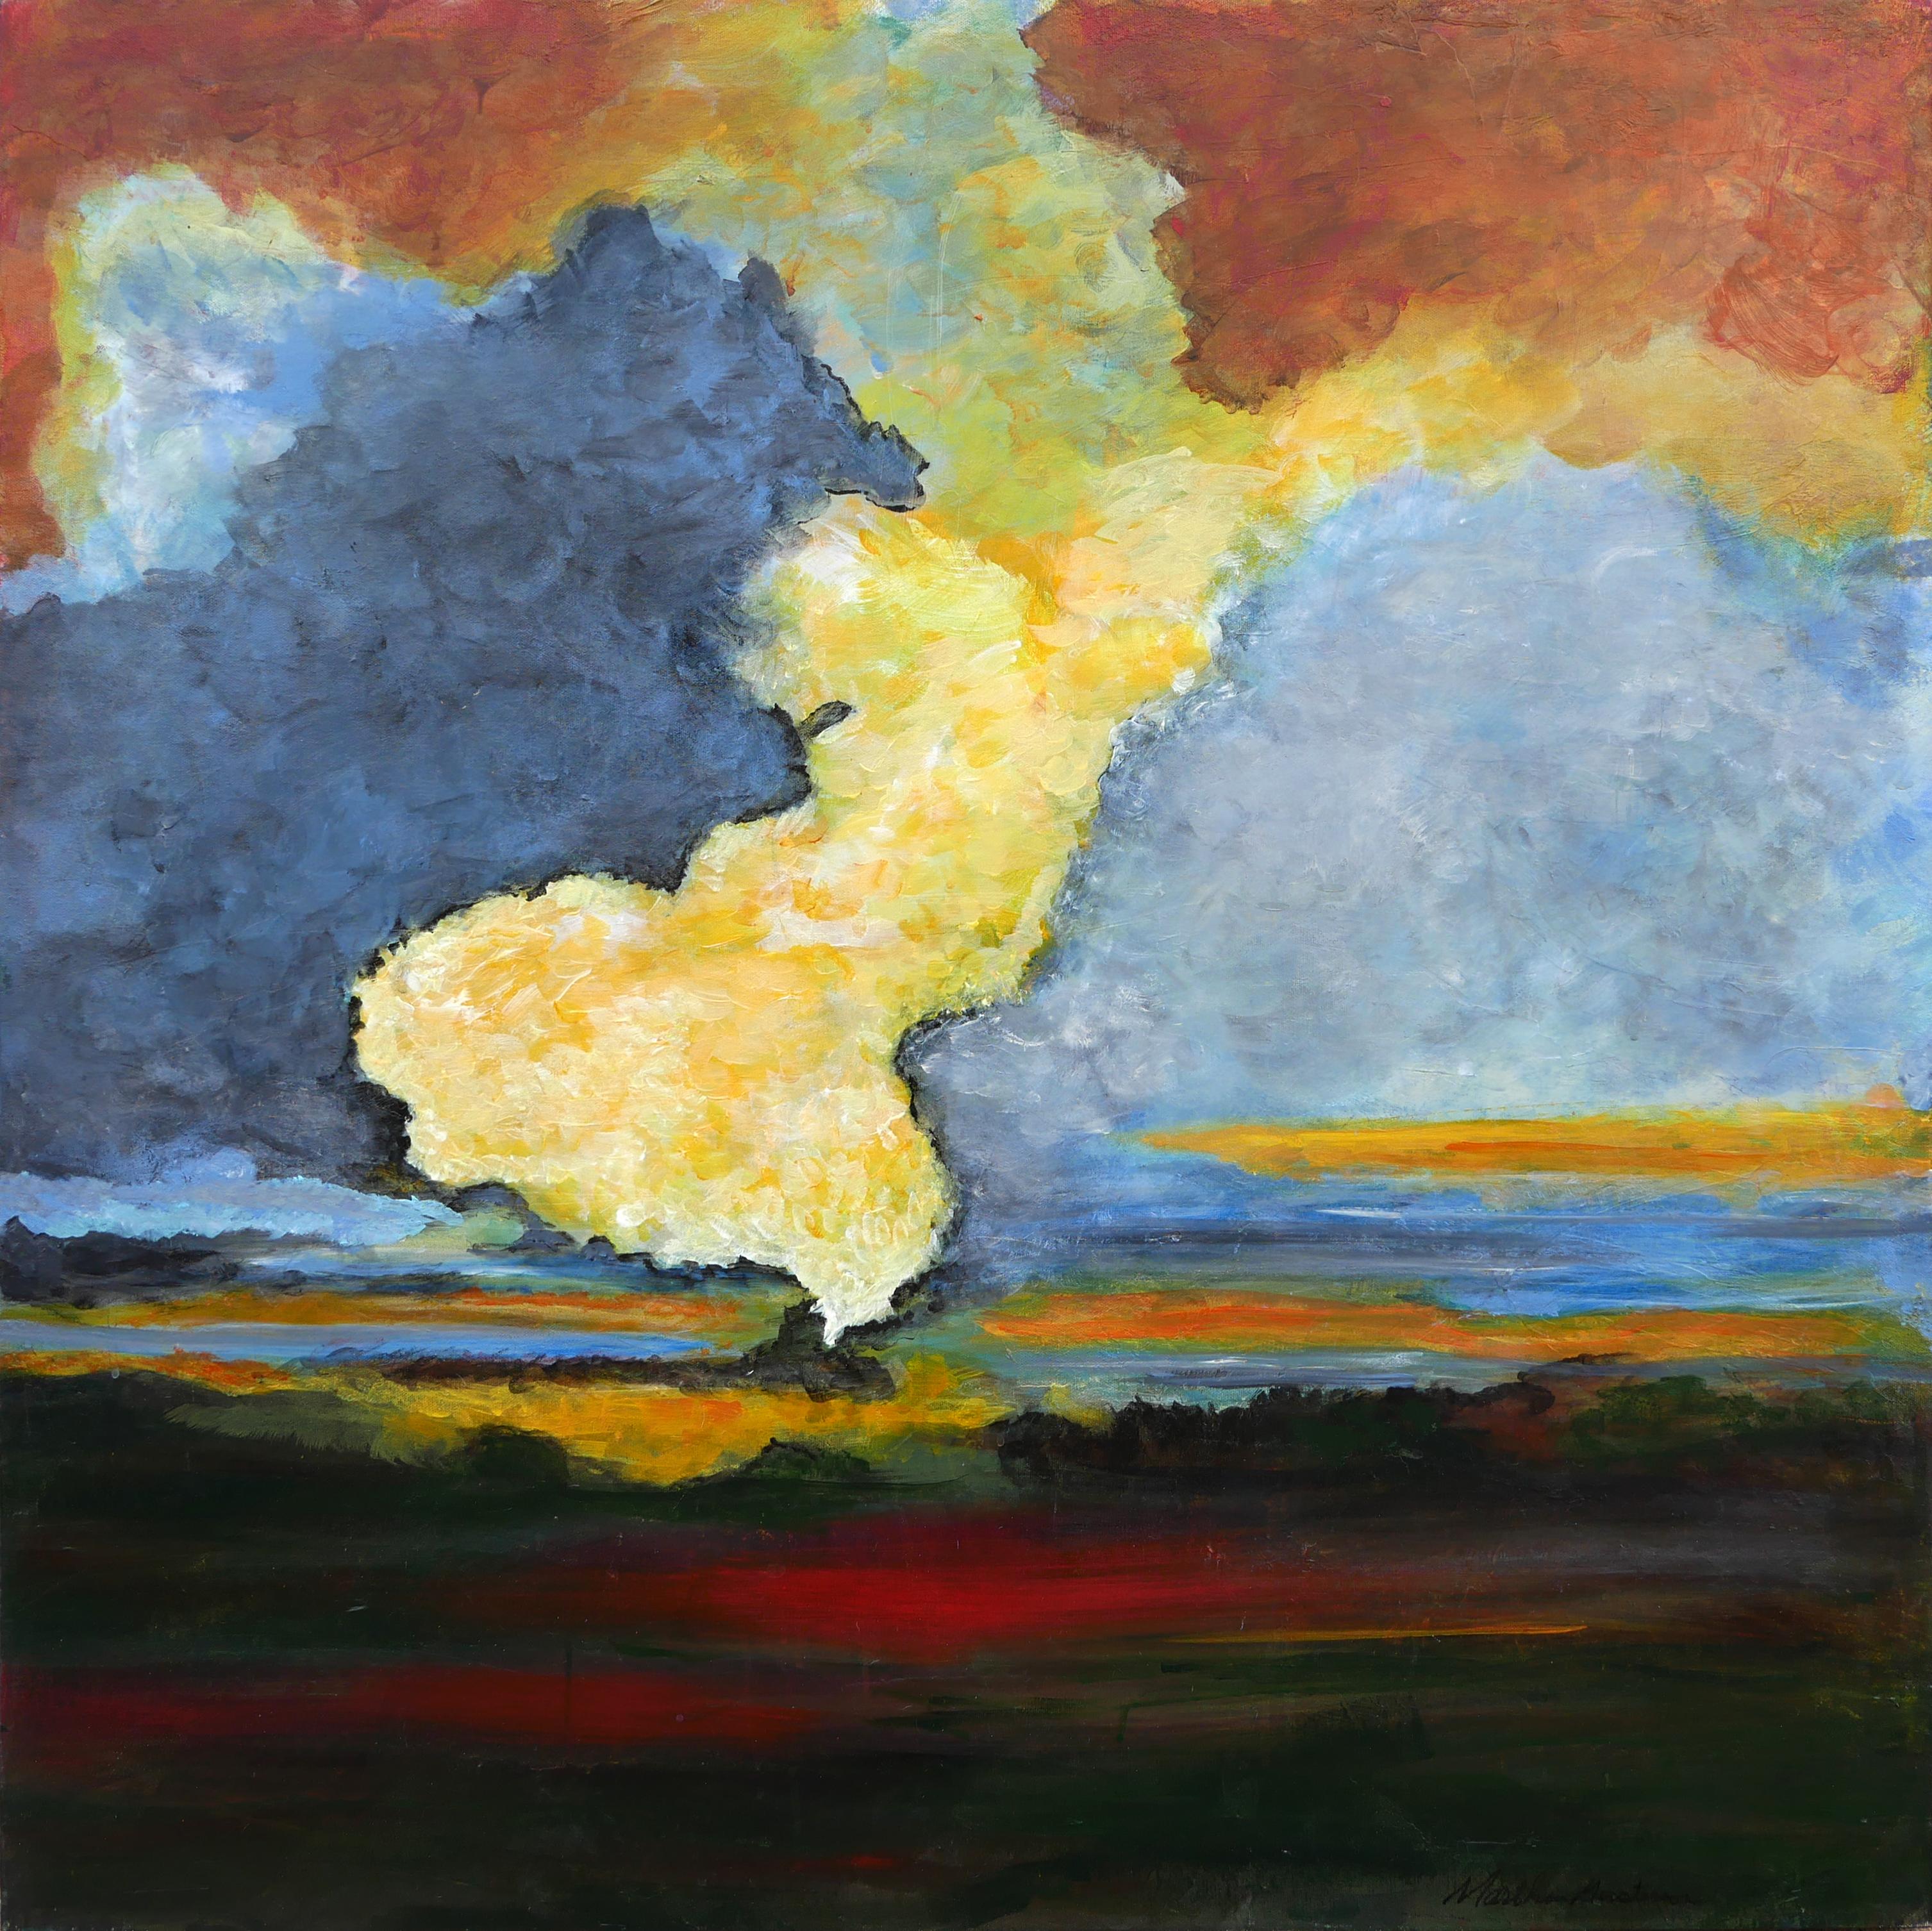 Landscape Painting Marthann Masterson - Peinture de paysage abstraite contemporaine rouge, bleue, jaune et verte